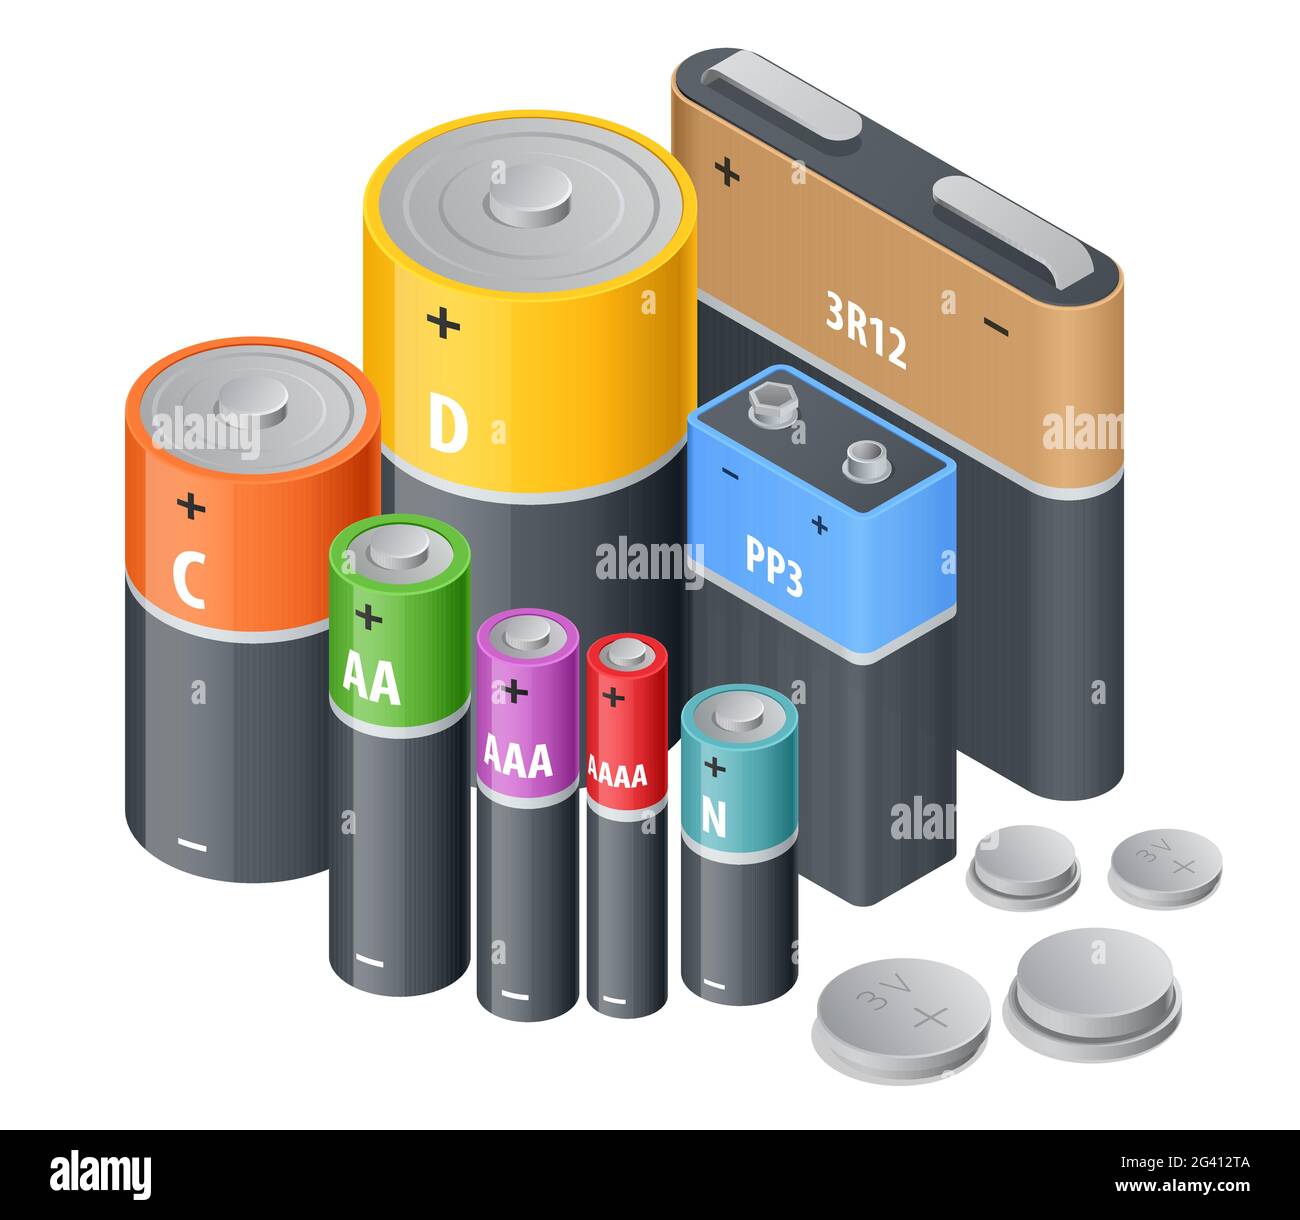 Isometrische Alkali-Mangan-Batterie, Akkumulatoren. Alkali-Zylinder,  Akkumulator und Knopfzellen. Gruppe von Batterien unterschiedlicher Größe,  isoliert auf Weiß Stock-Vektorgrafik - Alamy